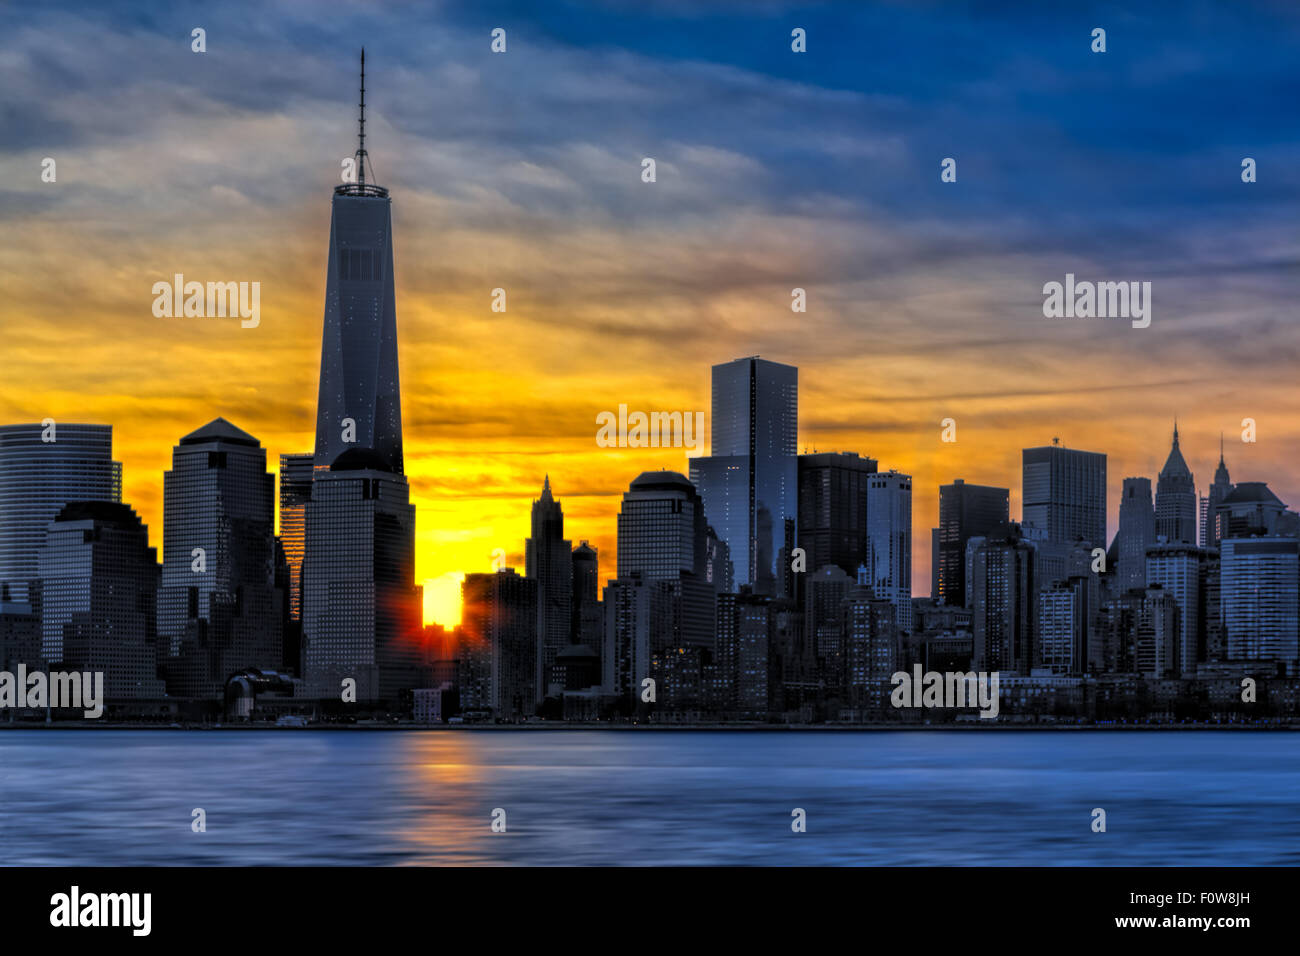 Sonnenaufgang am One World Trade Center (Freedom Tower) in der unteren Manhattan New York City-Skyline. Stockfoto